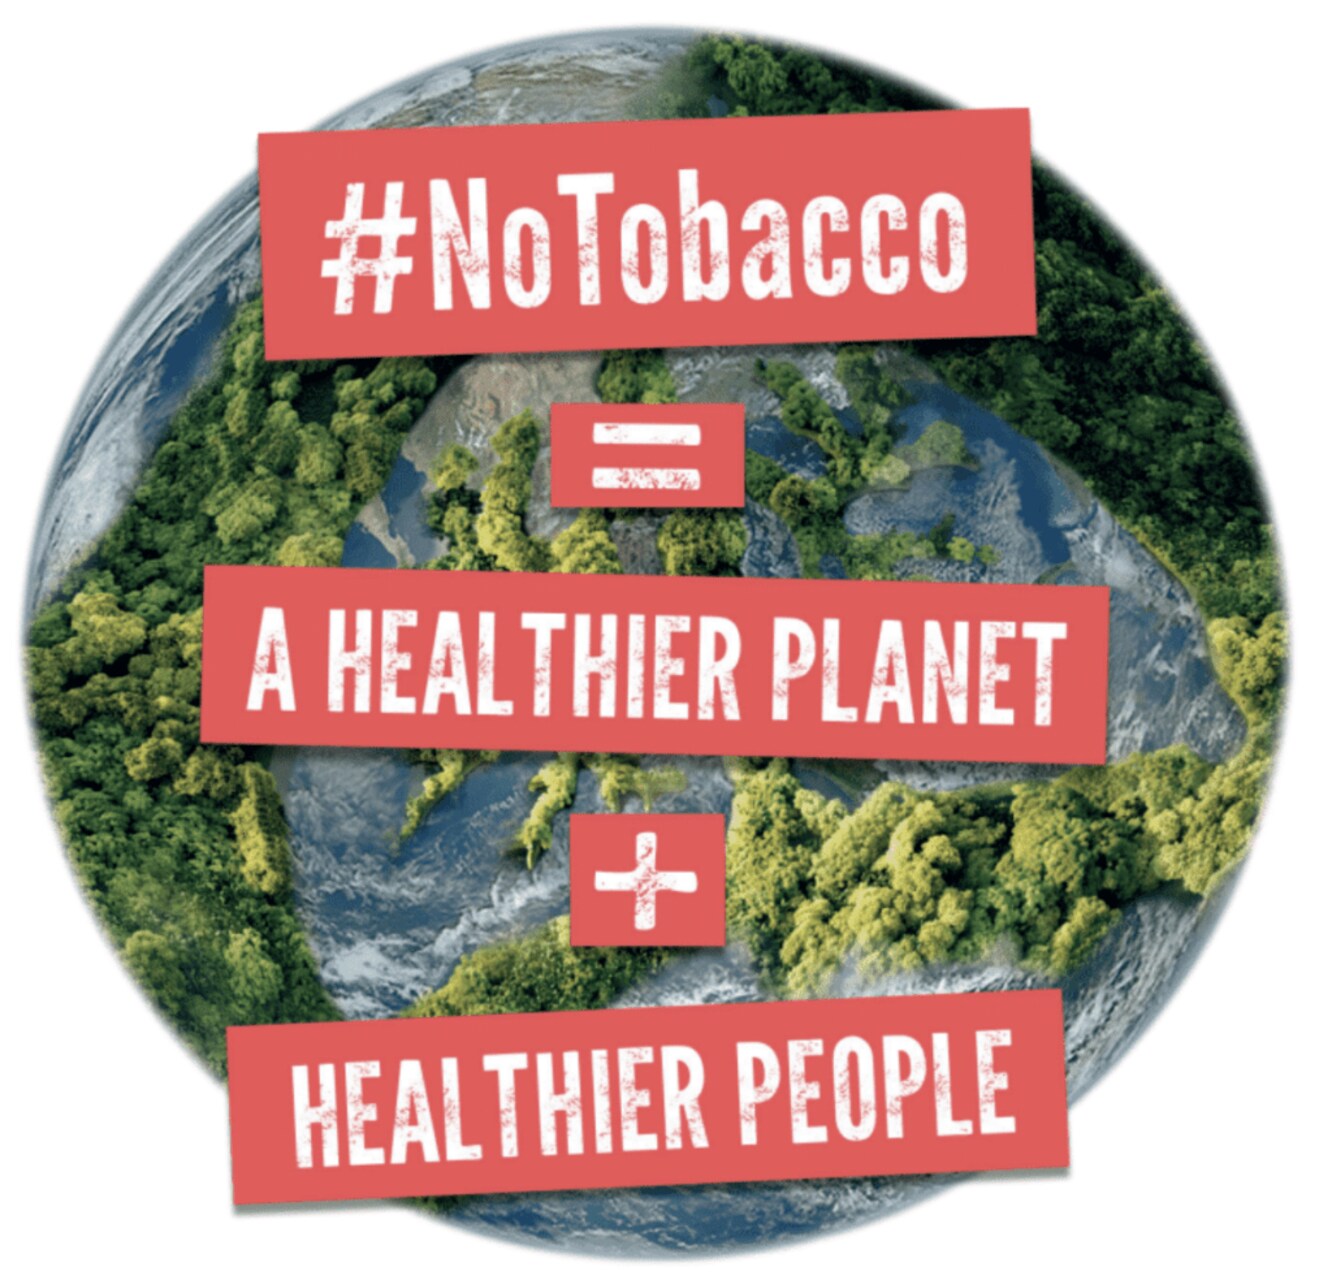 Tabak: Rauchen vergiftet unseren Planeten immer noch, aber globale Maßnahmen zur Bekämpfung des Phänomens zeigen Wirkung